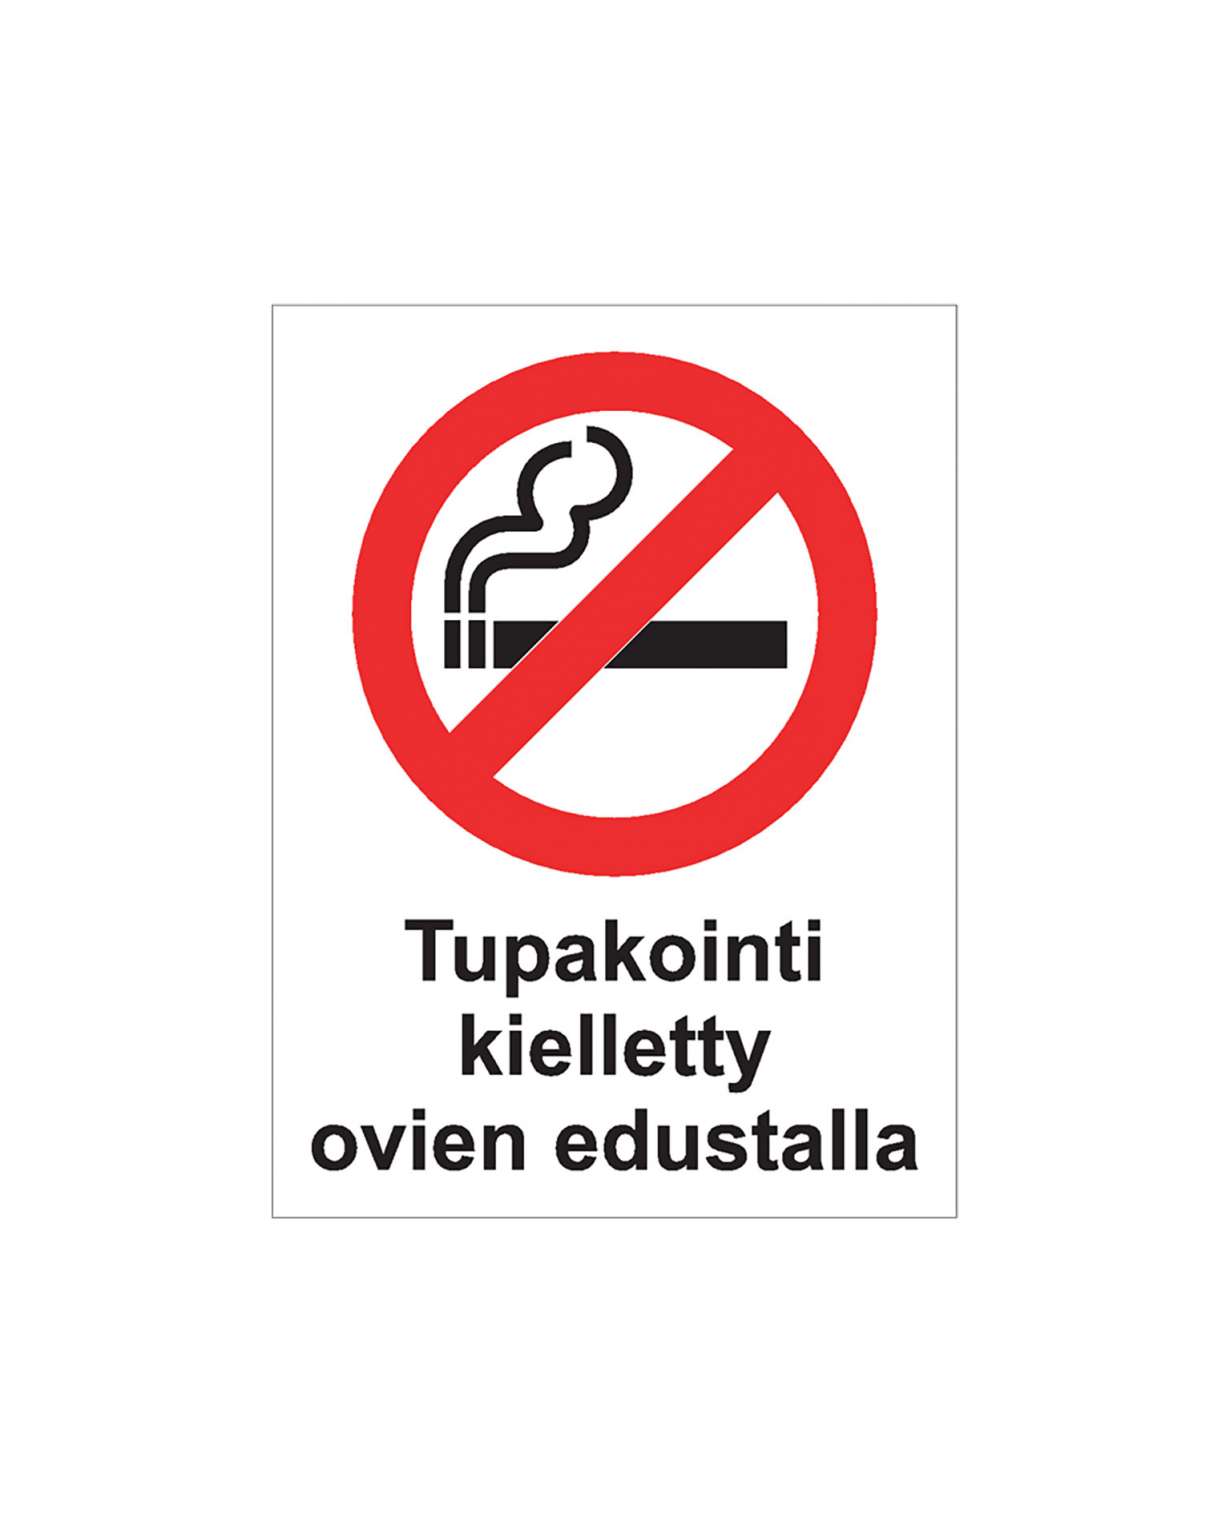 Tupakointi kielletty ovien edustalla, Ibond alumiini, 200x300 mm